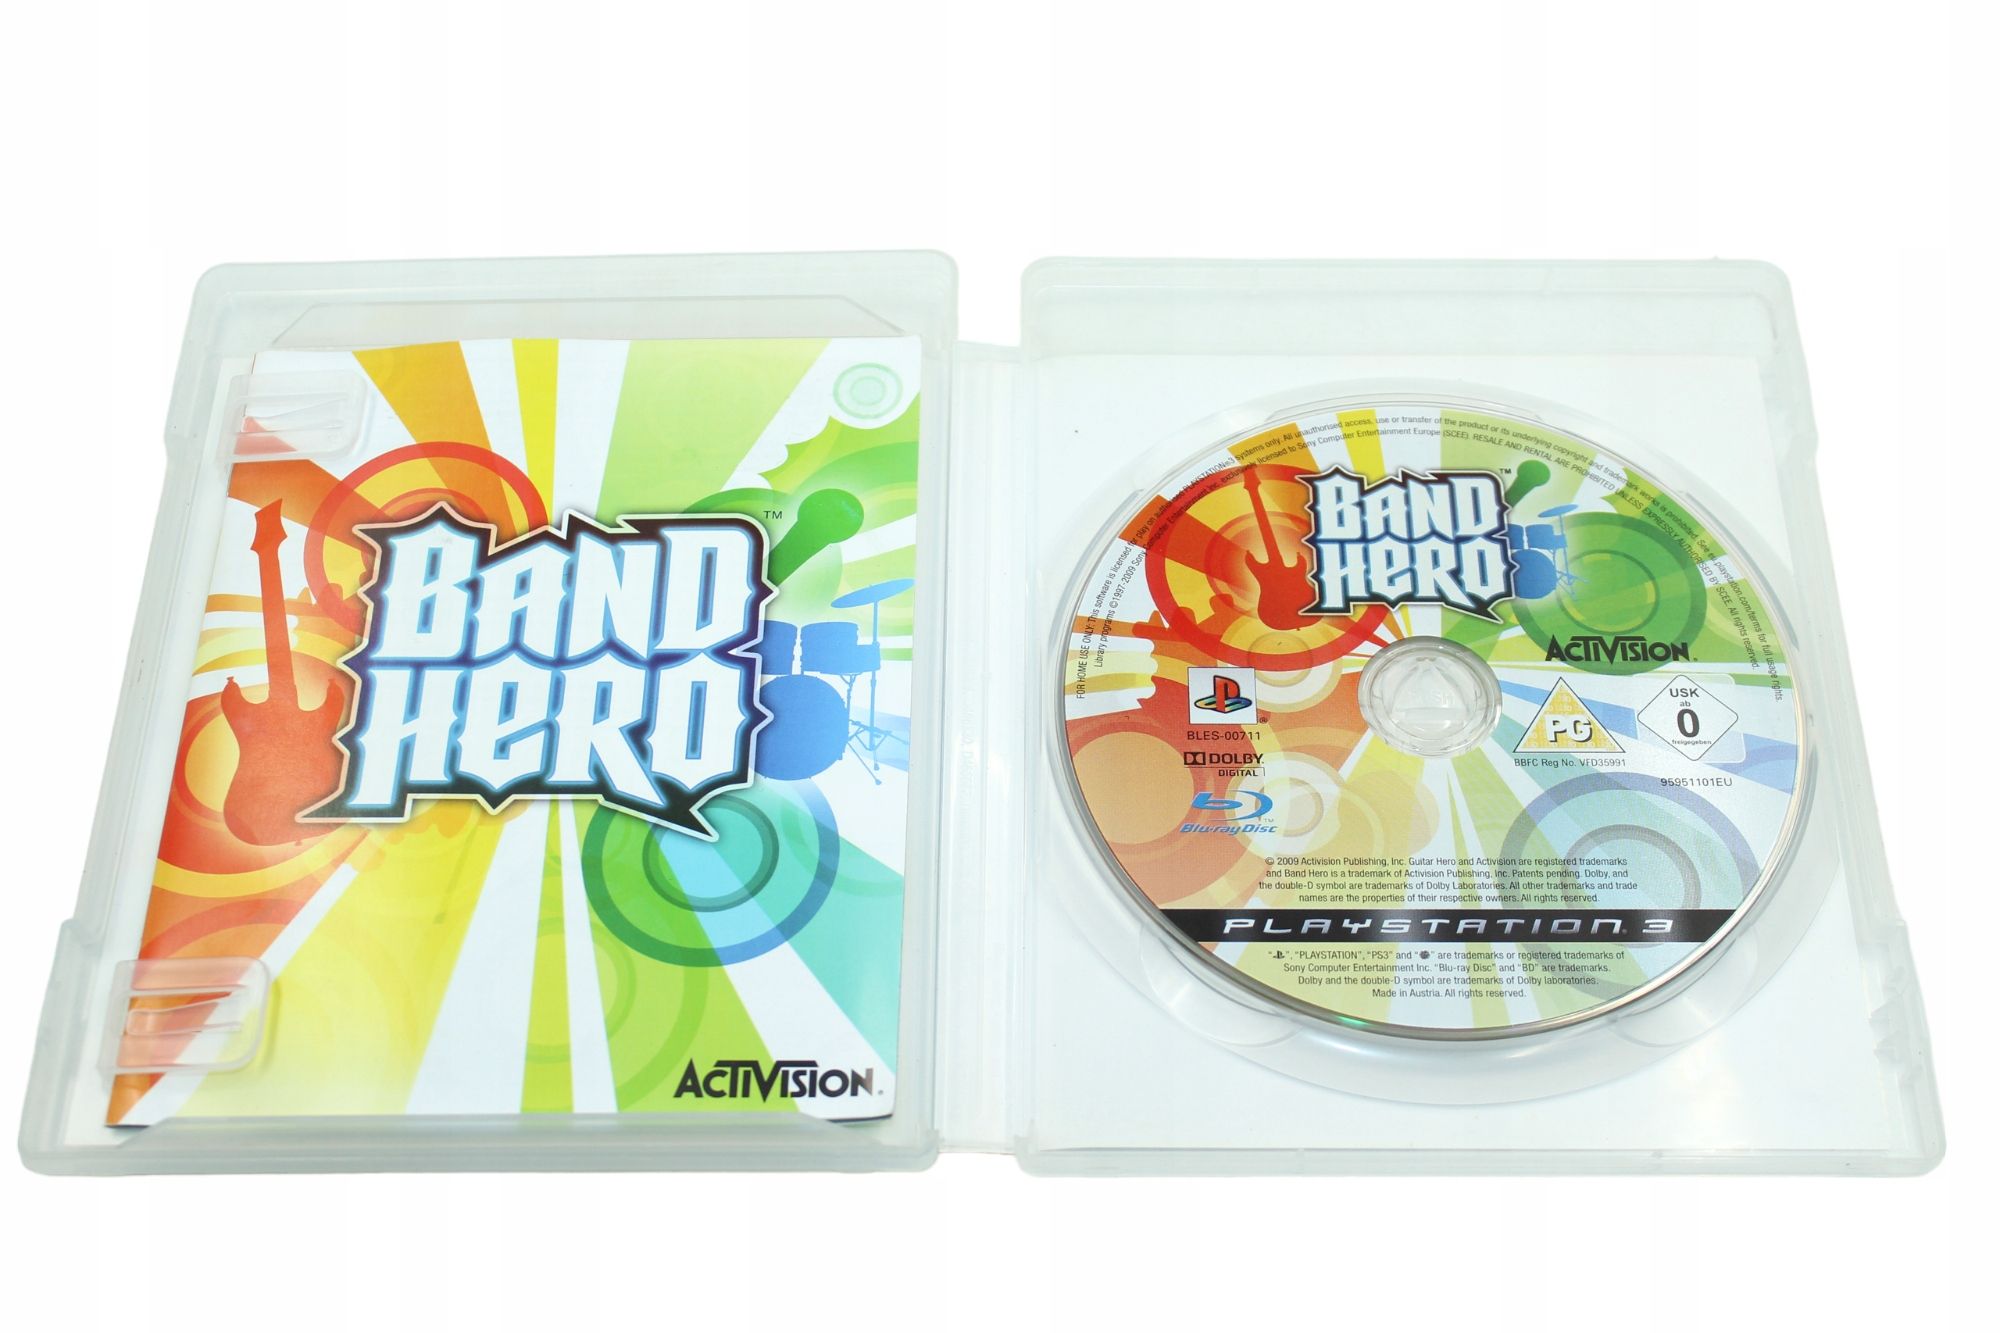 Band Hero PS3 PlayStation 3